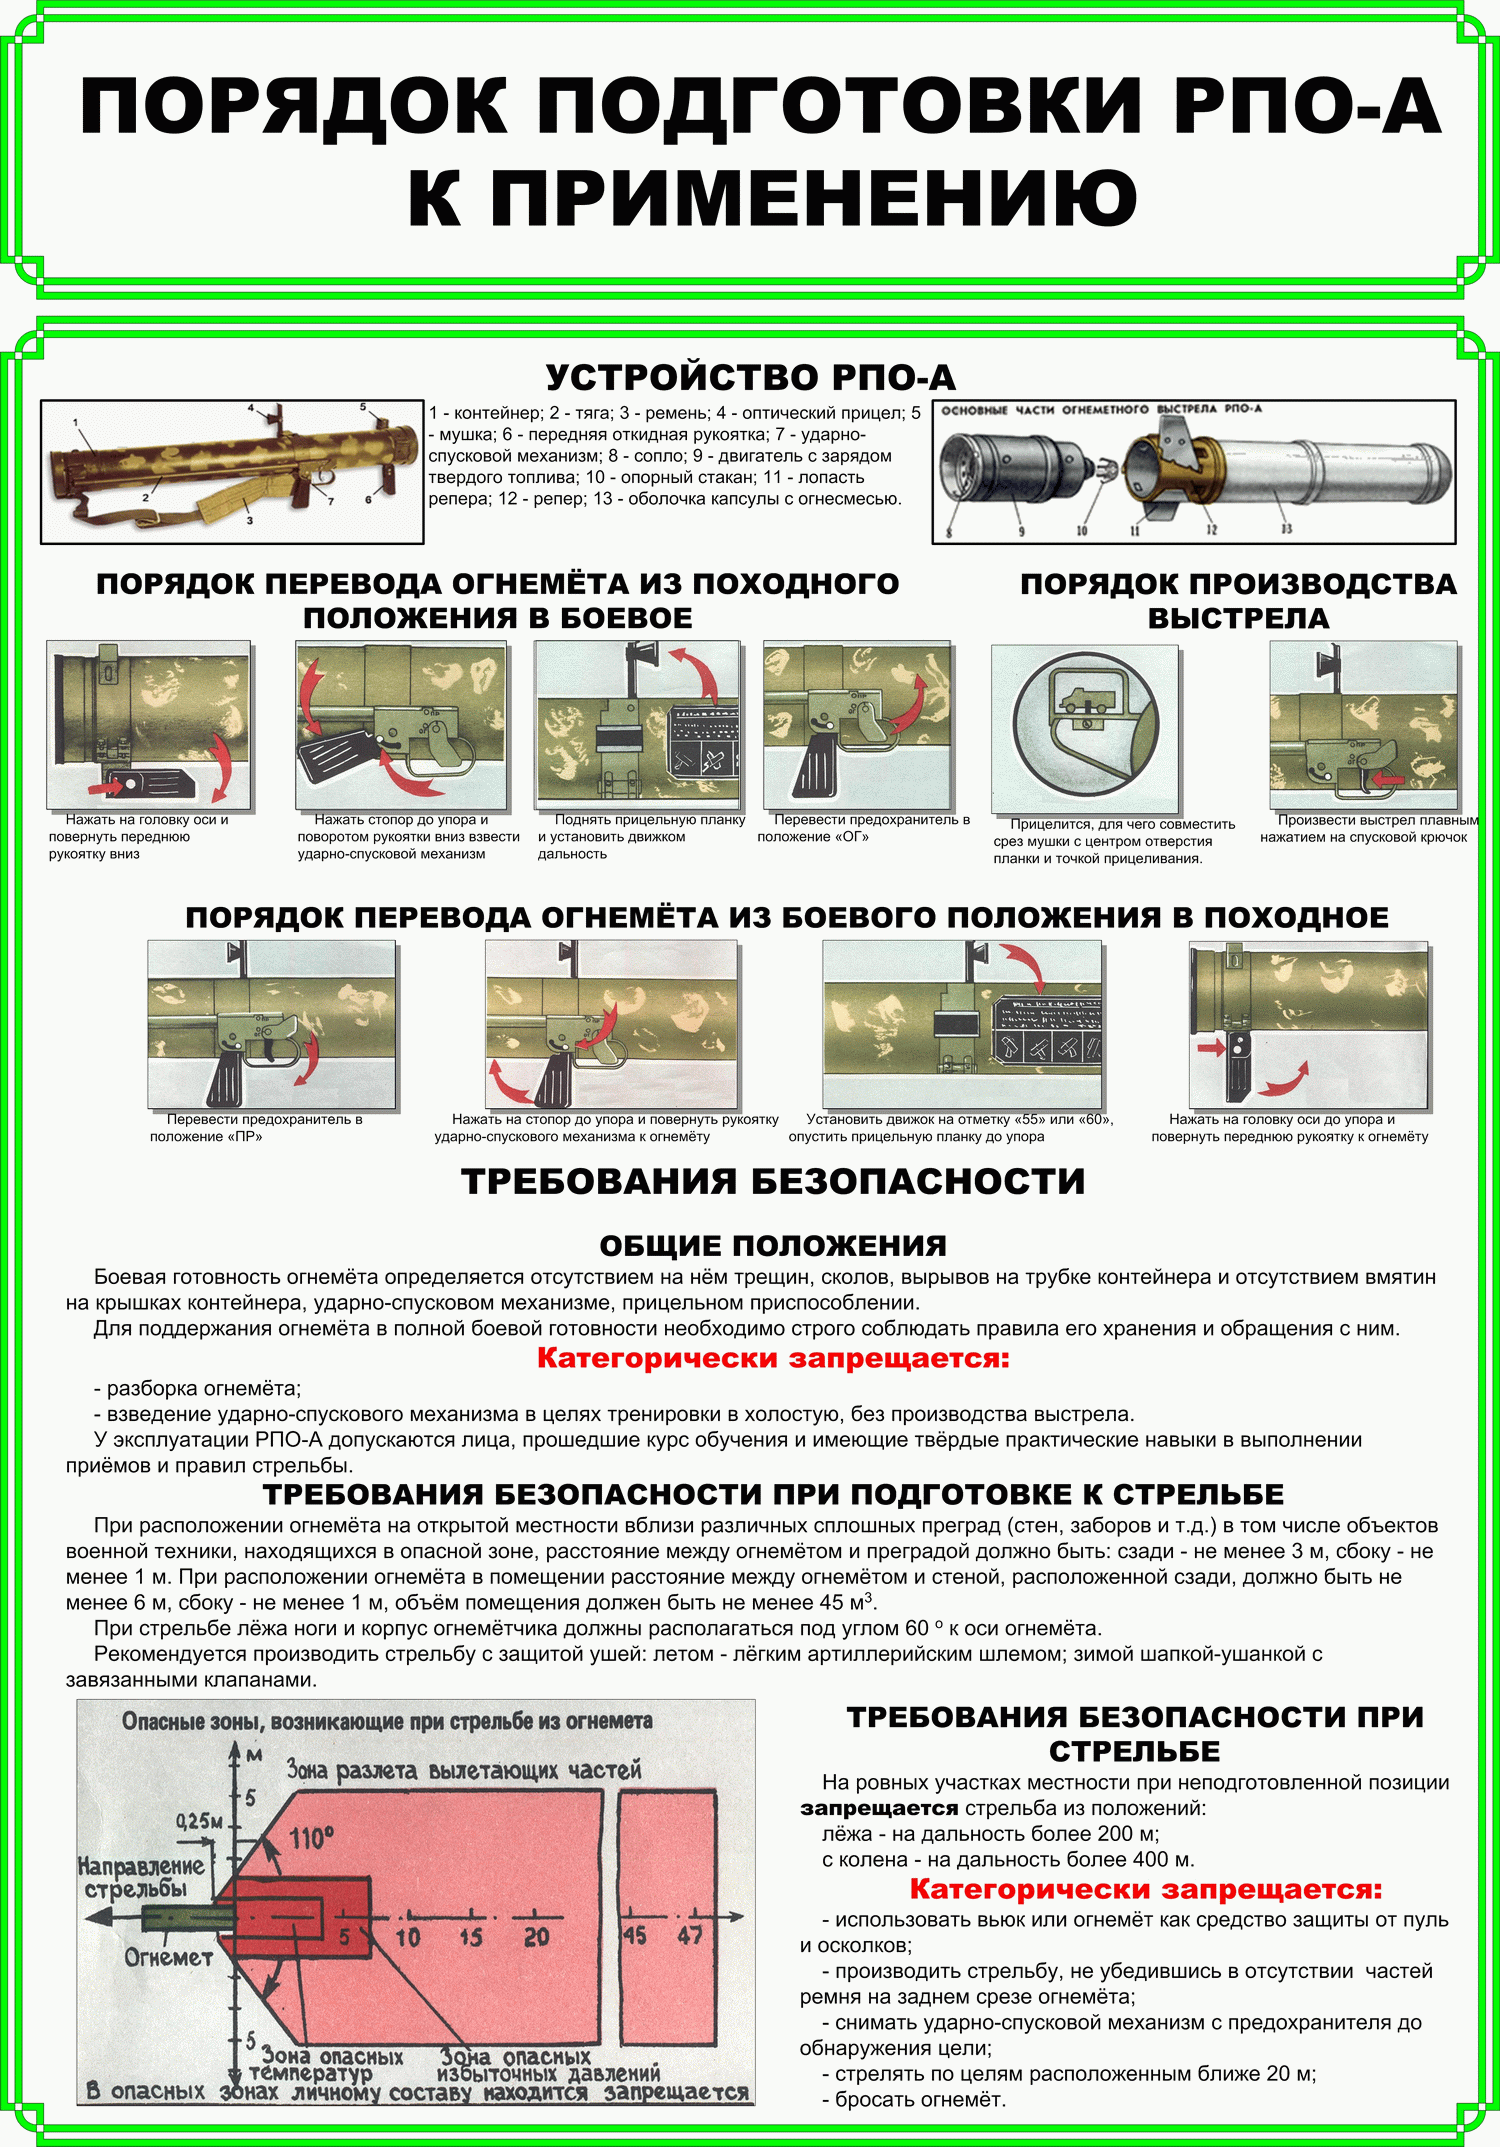 Порядок подготовки РПО-А (реактивных пехотных огнеметов) к применению (устройство РПО, порядок перевода из походного положения в боевое, требования безопасности)